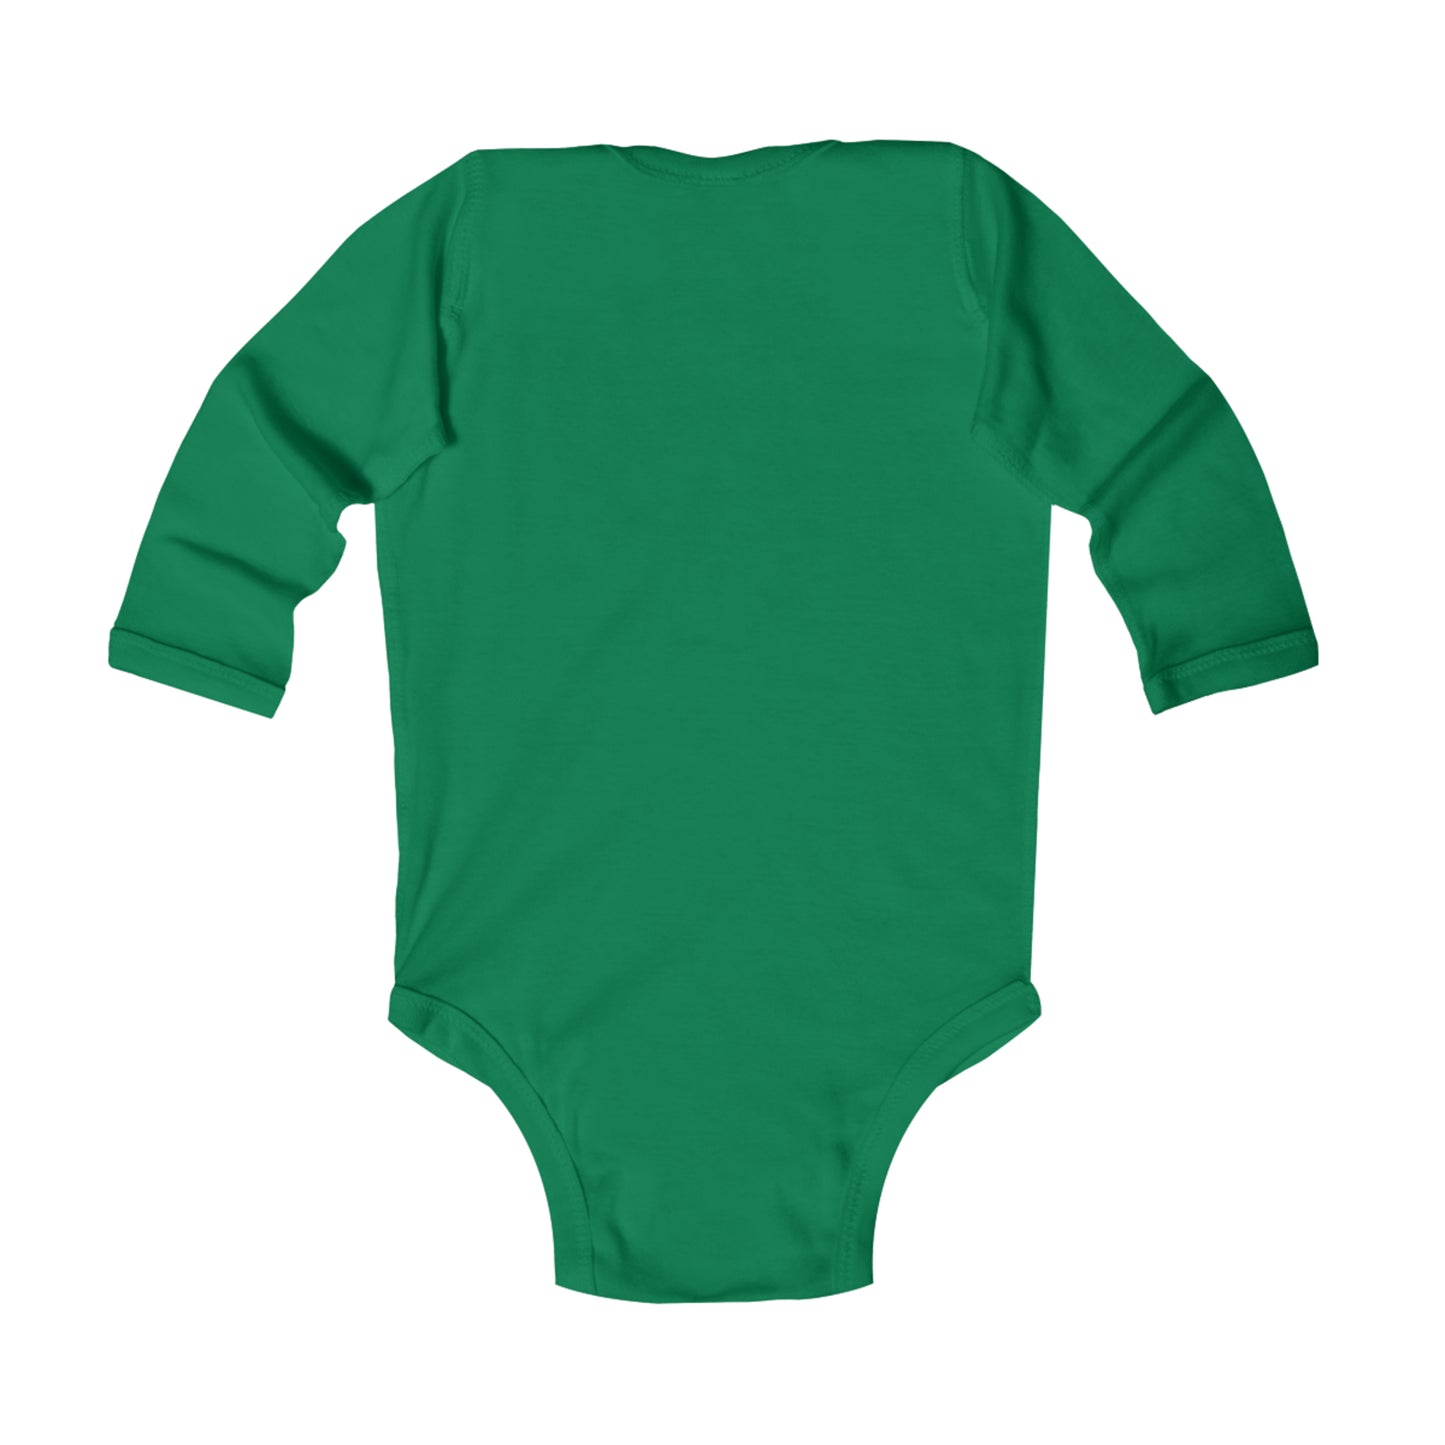 Wee Hooligan | St. Patrick's Day Baby Bodysuit | Gender-Neutral Long-Sleeve Baby BodySuit